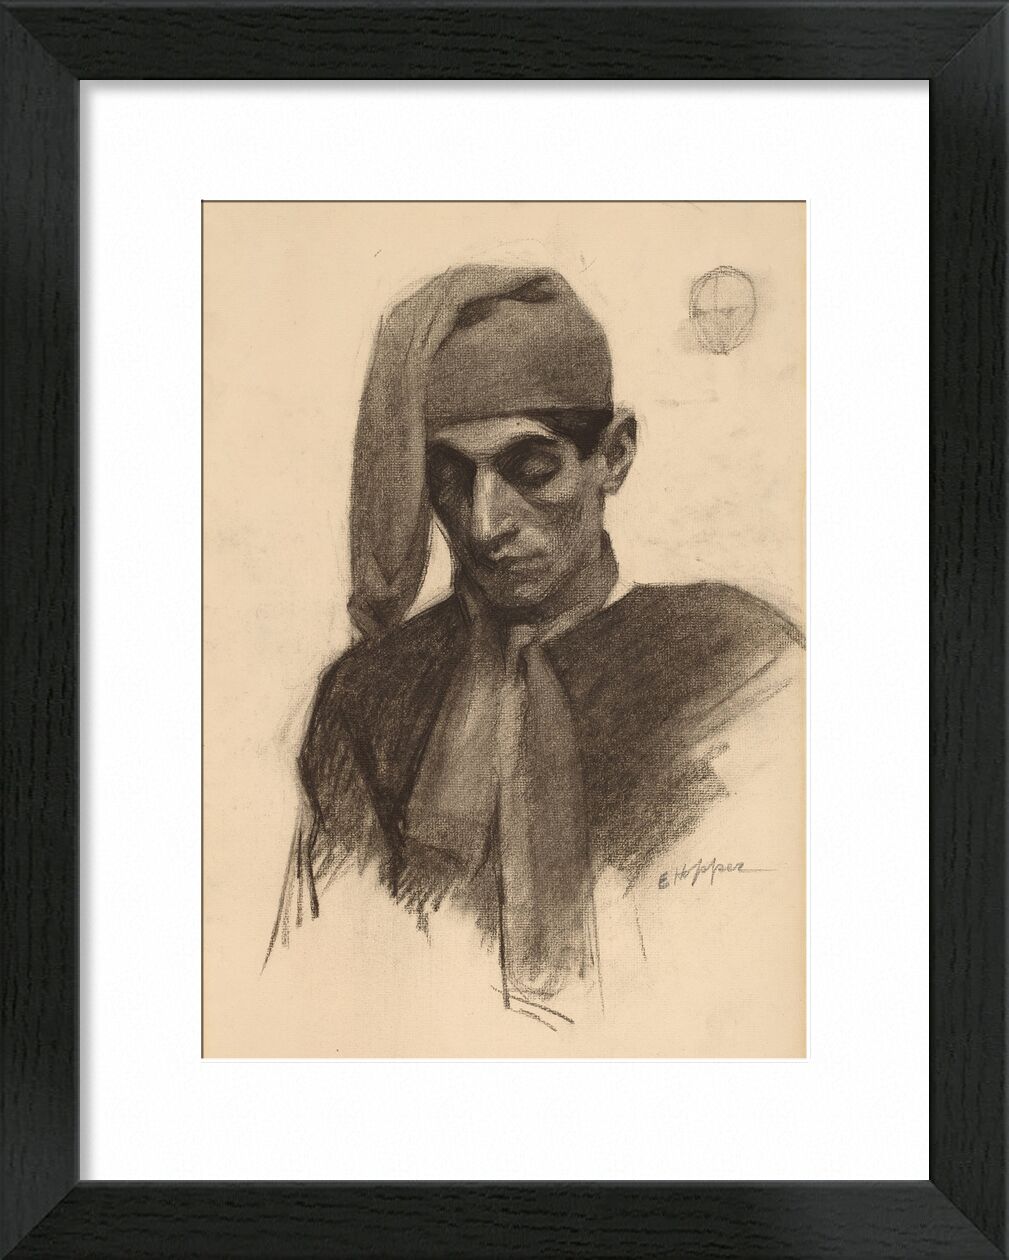 Jimmy Corsini - Edward Hopper desde Bellas artes, Prodi Art, retrato, Edward Hopper, lápiz, dibujo a lápiz, blanco y negro